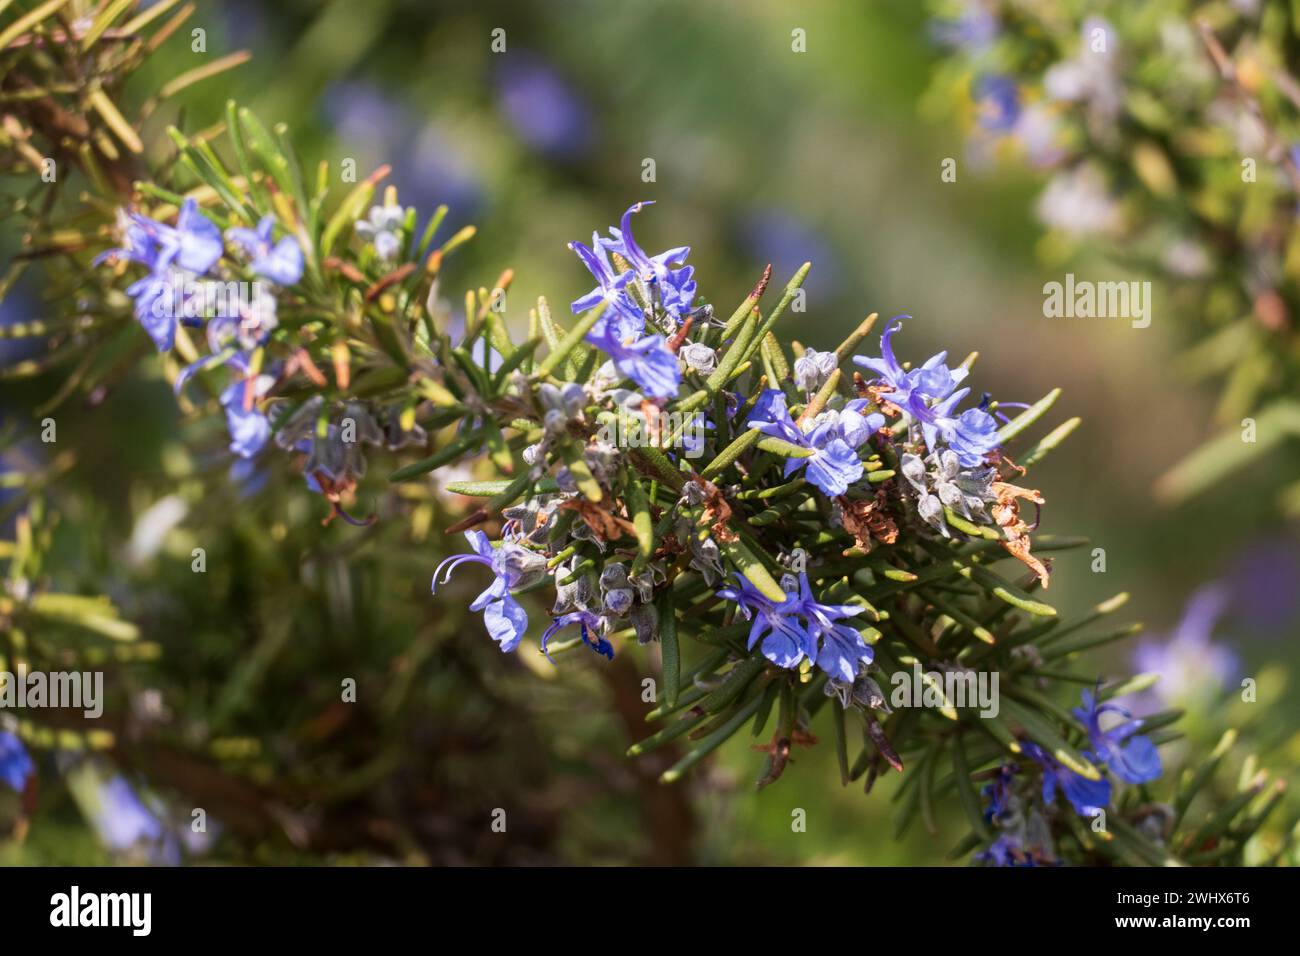 Rosmarin mit blau lila farbenen Blüten und unscharfem Hintergrund Foto Stock